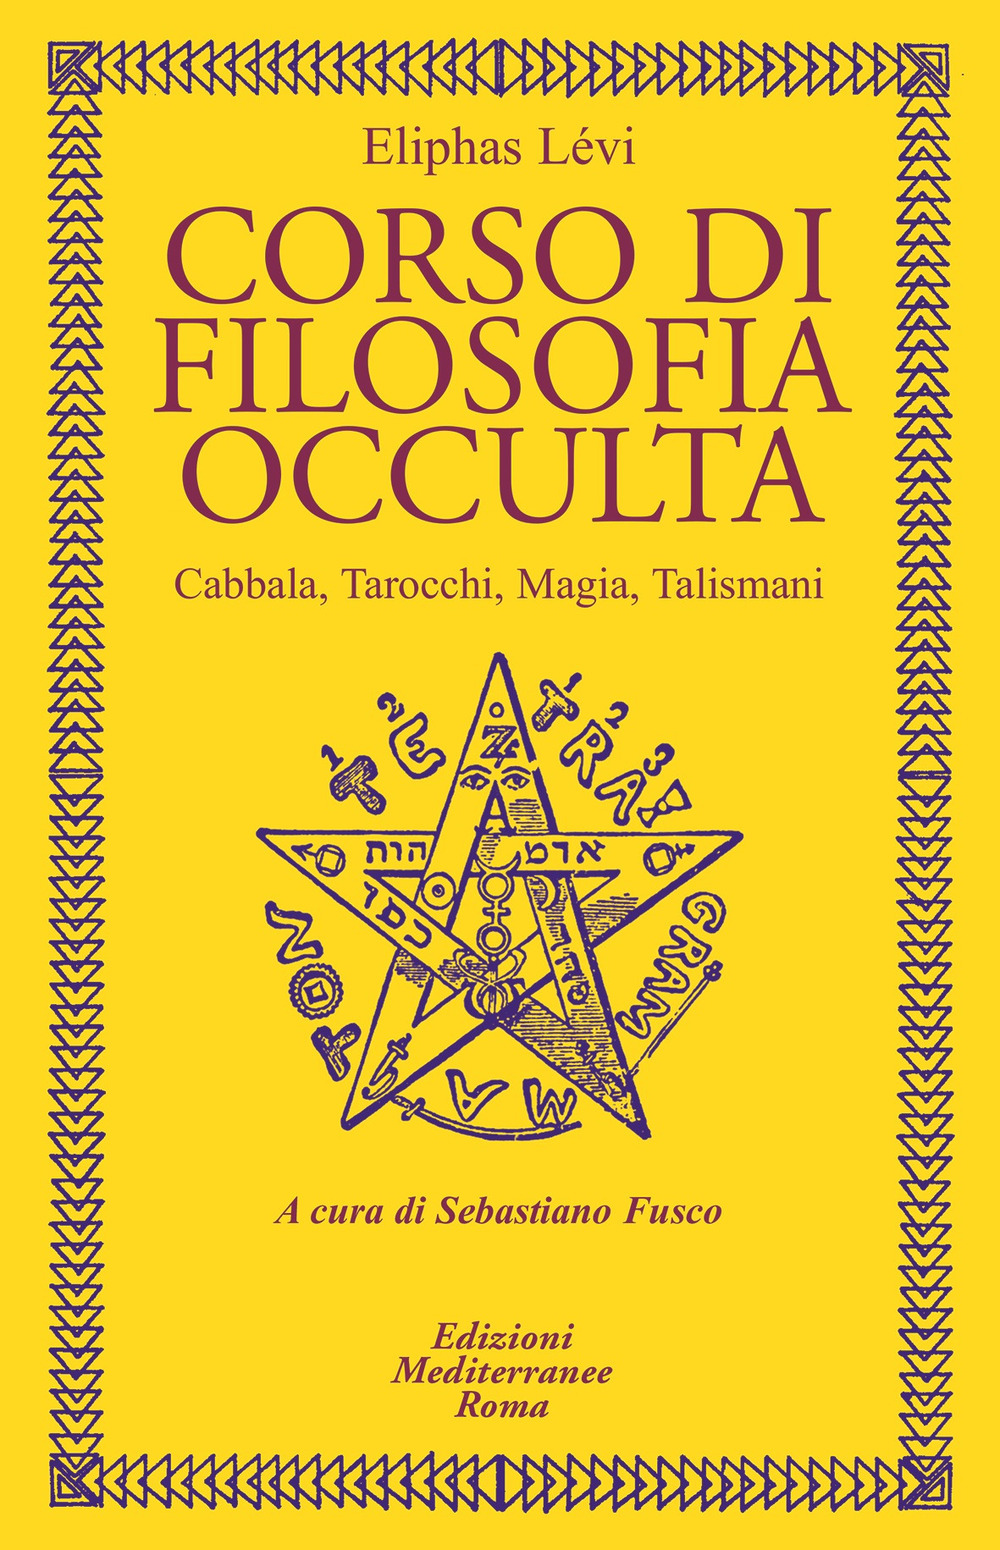 Image of Corso di filosofia occulta. Cabbala, Tarocchi, magia, talismani